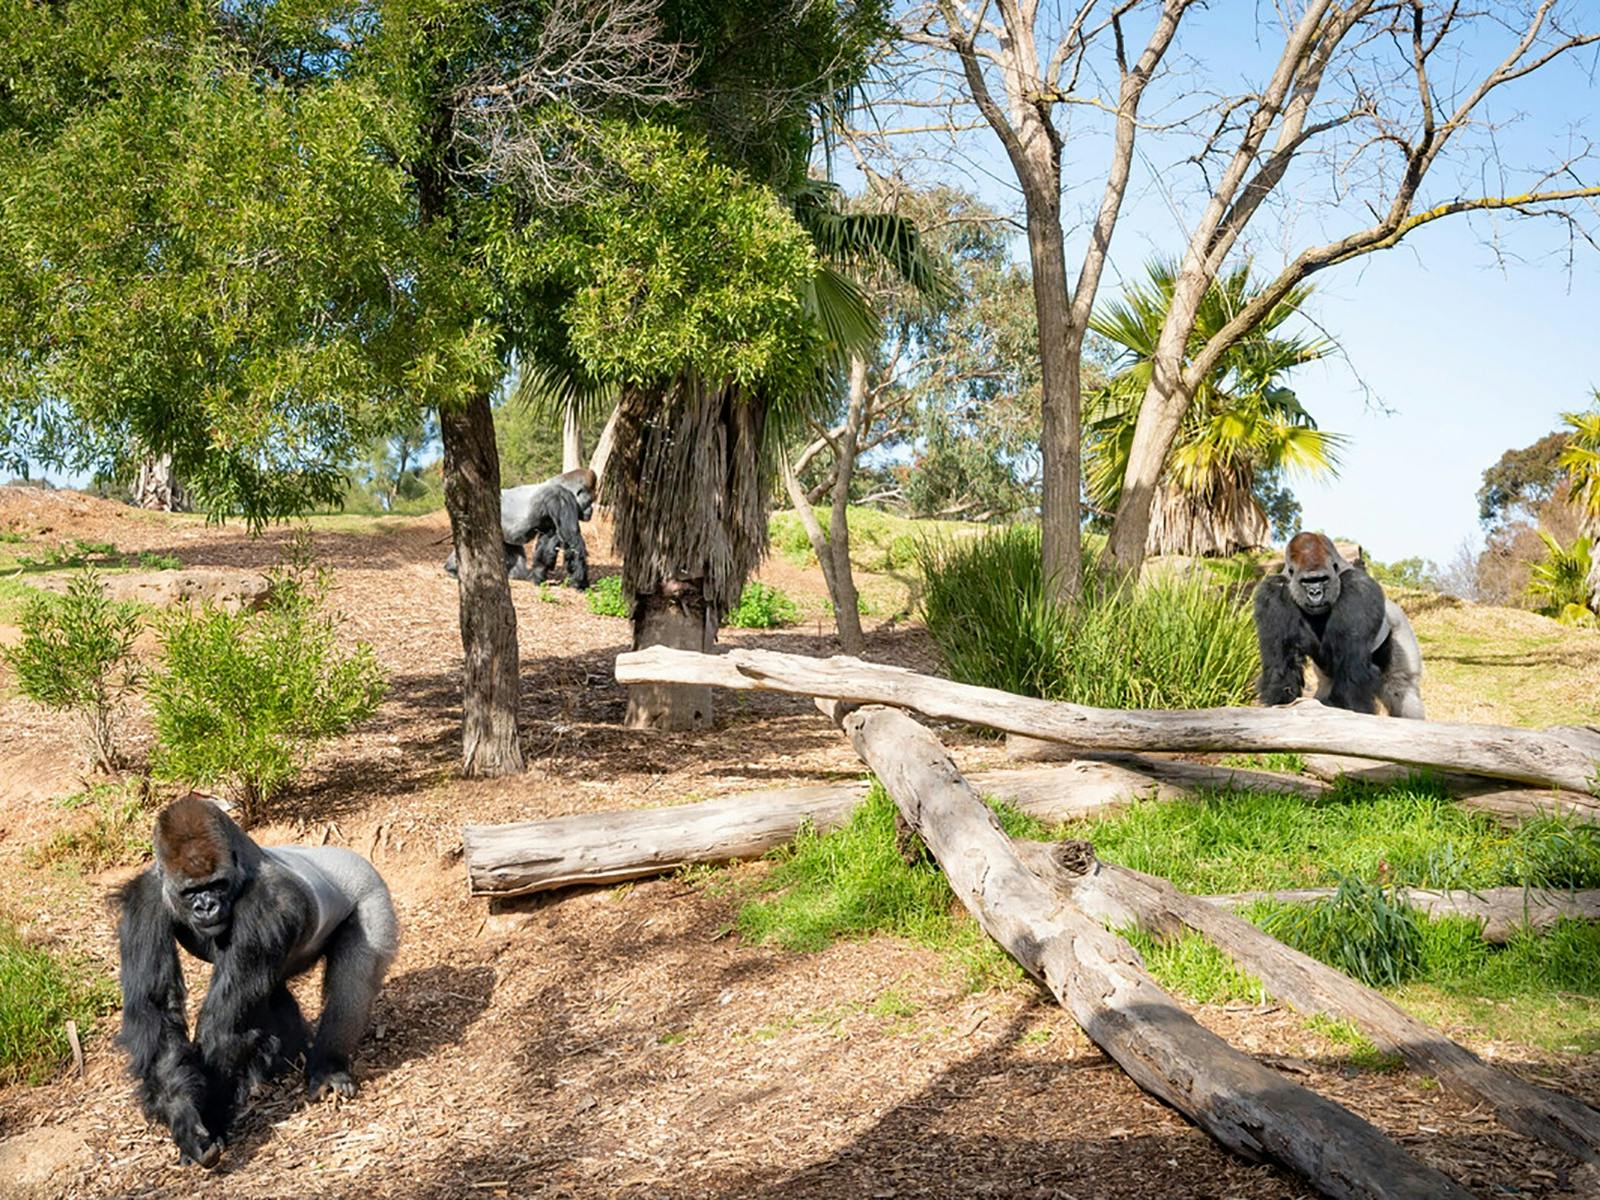 墨尔本动物园澳大利亚野生动物之旅 - Klook客路